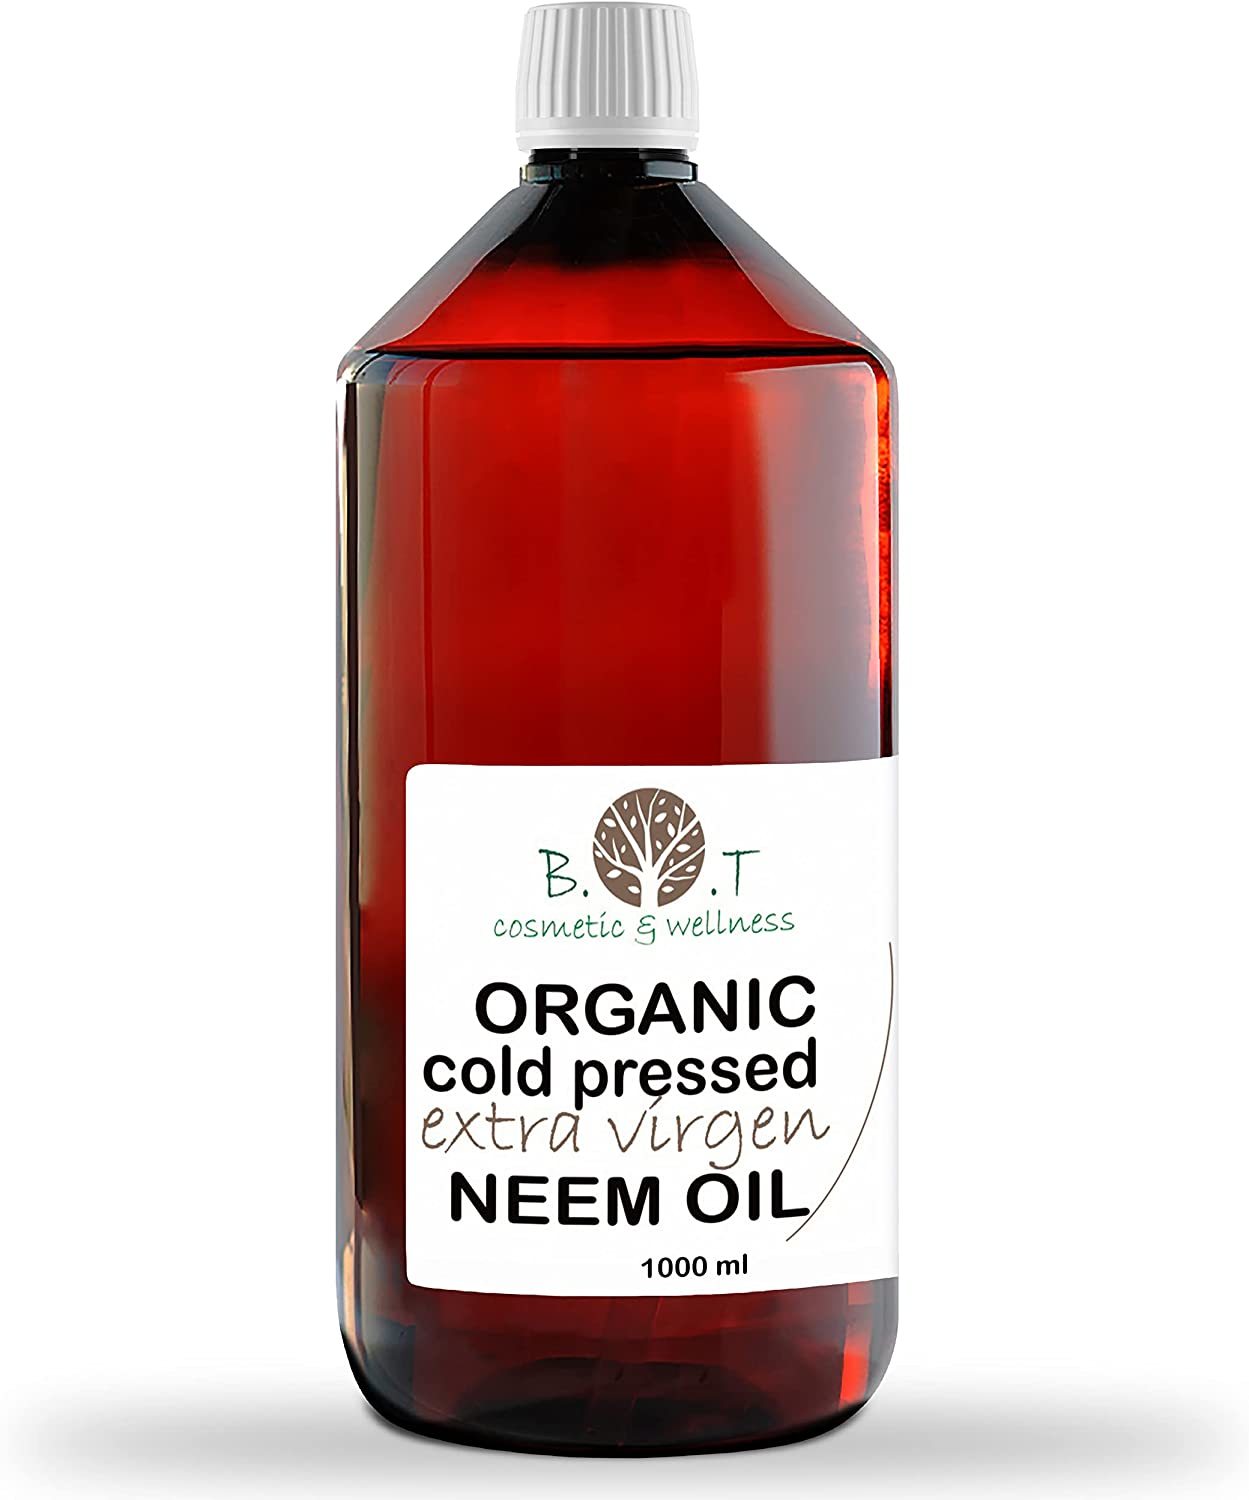 Aceite de Neem: beneficios y usos